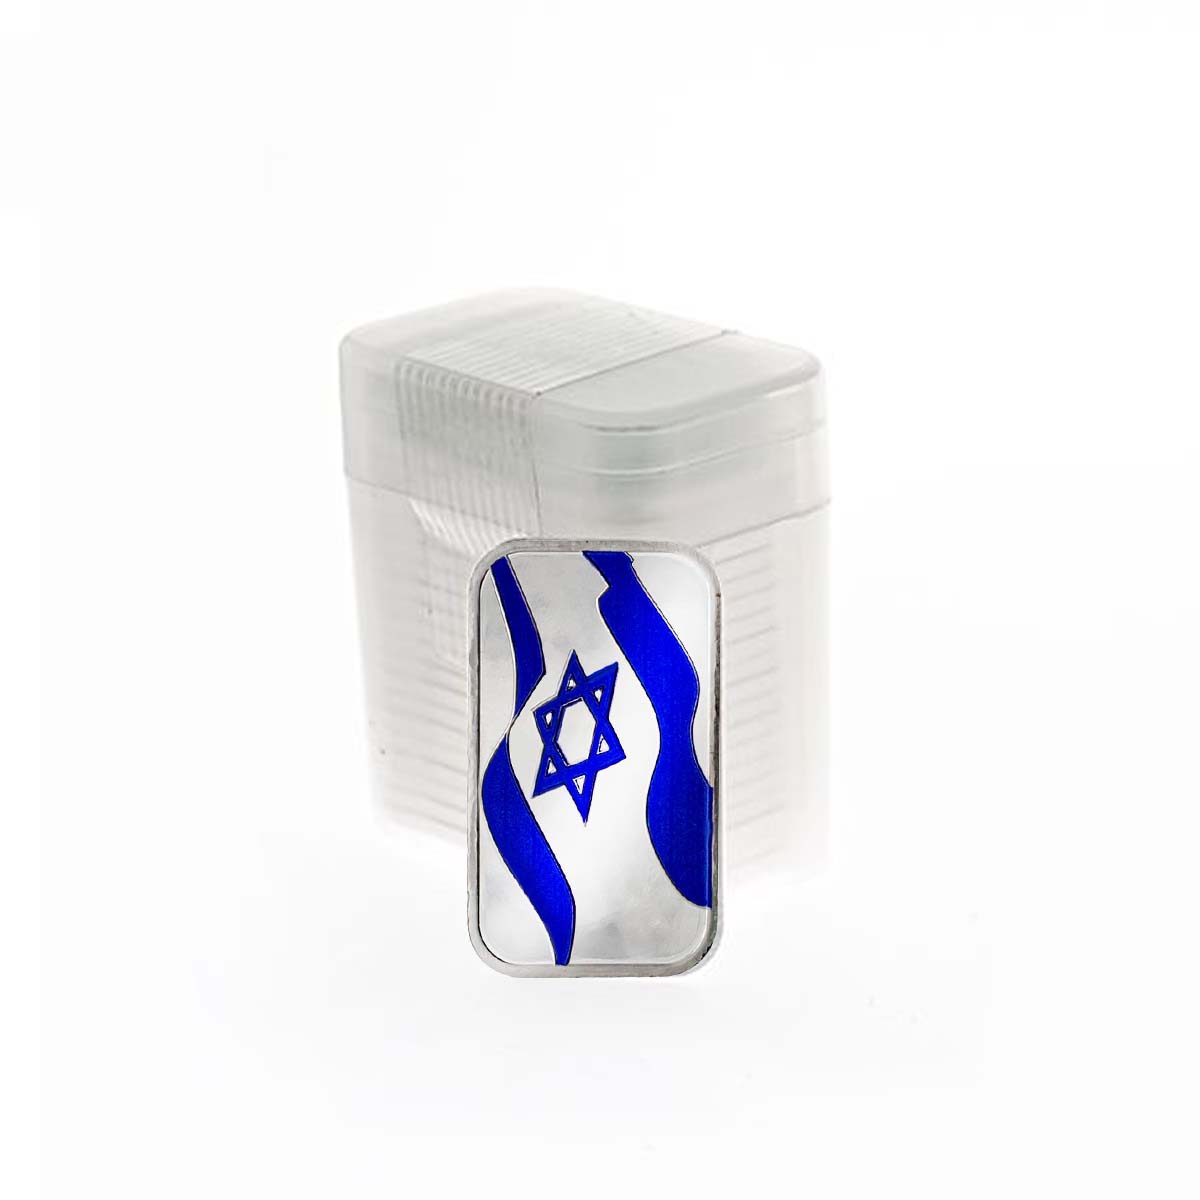 20 x 1 oz  Silver Bar - Flag of Israel